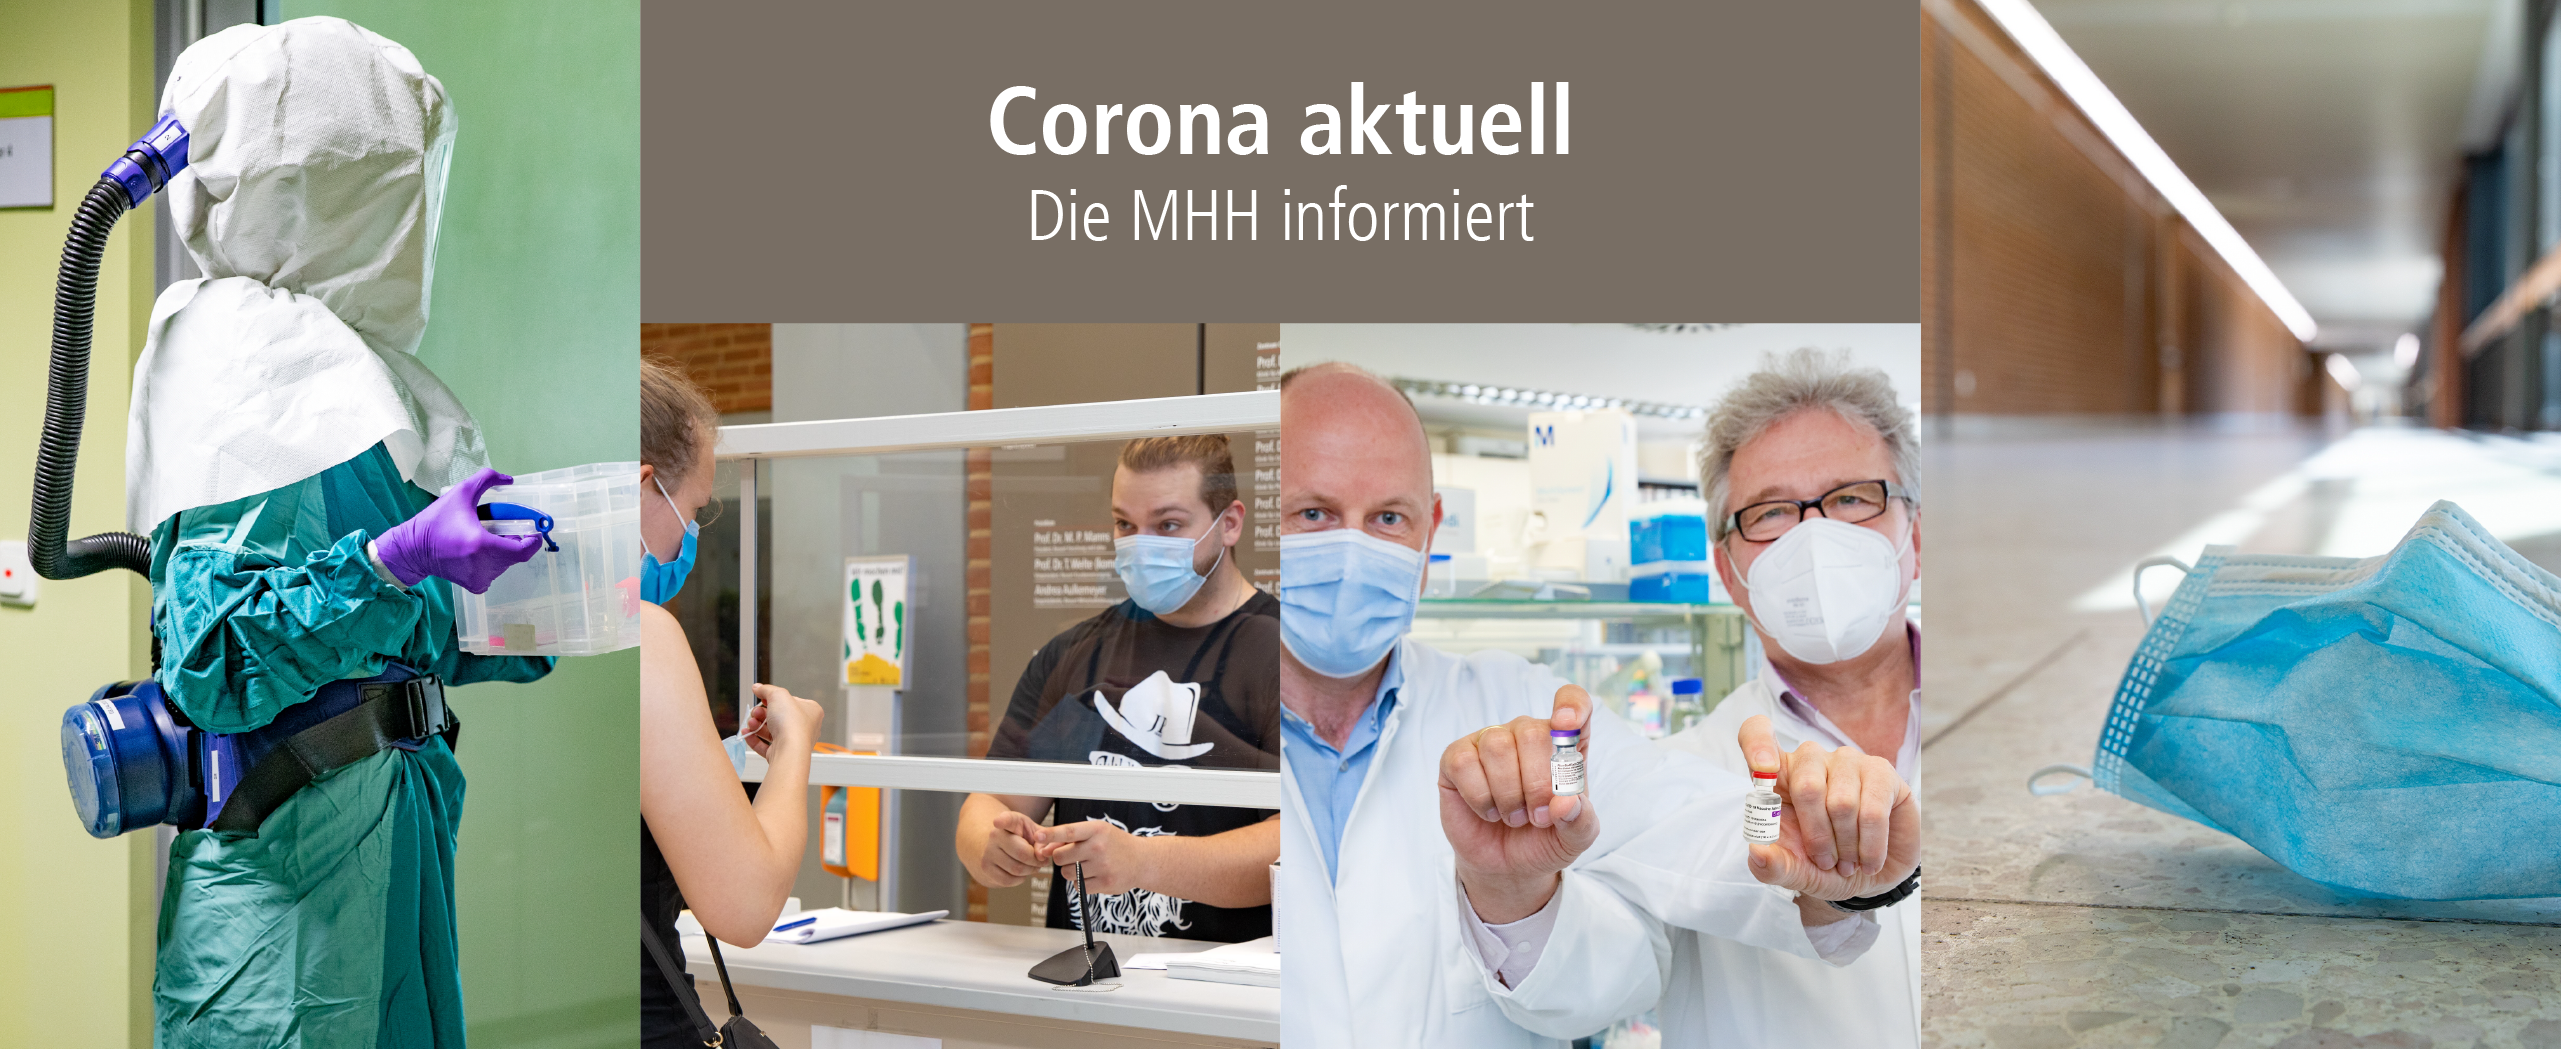 Collage mit Fotos zum Thema Corona und Aufschrift: "Corona aktuell: Die MHH informiert"